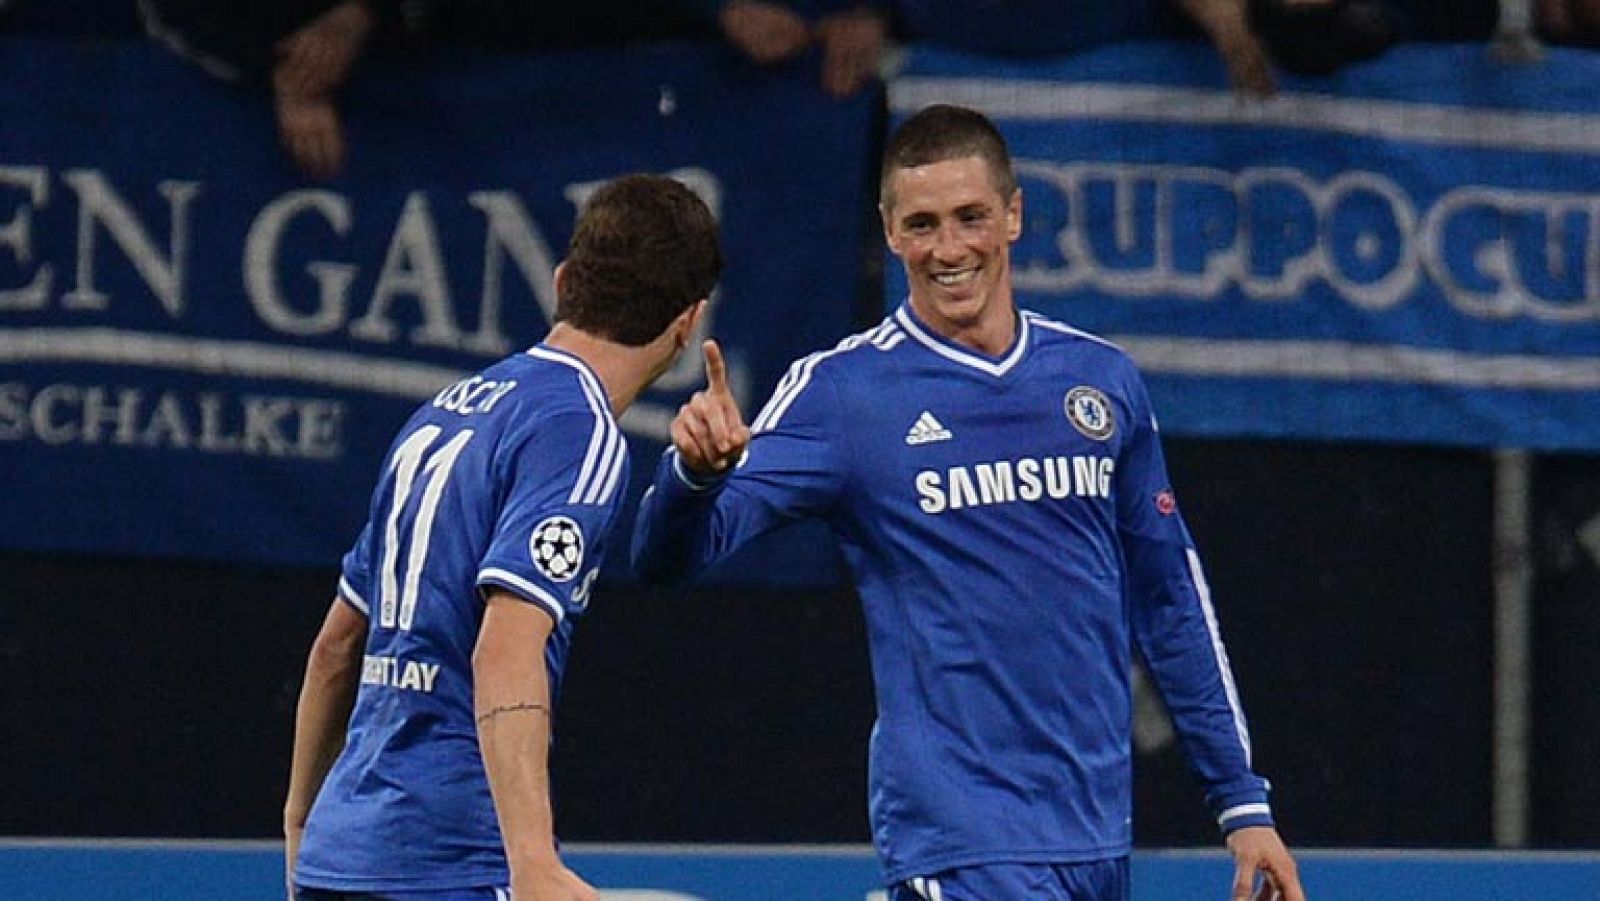 El español Fernando Torres, con dos goles, lideró hoy la goleada conseguida por el Chelsea a domicilio ante el Schalke (0-3), en un partido típico del equipo inglés que supo sacar el mayor partido posible de su fortaleza defensiva y del juego de contragolpe.